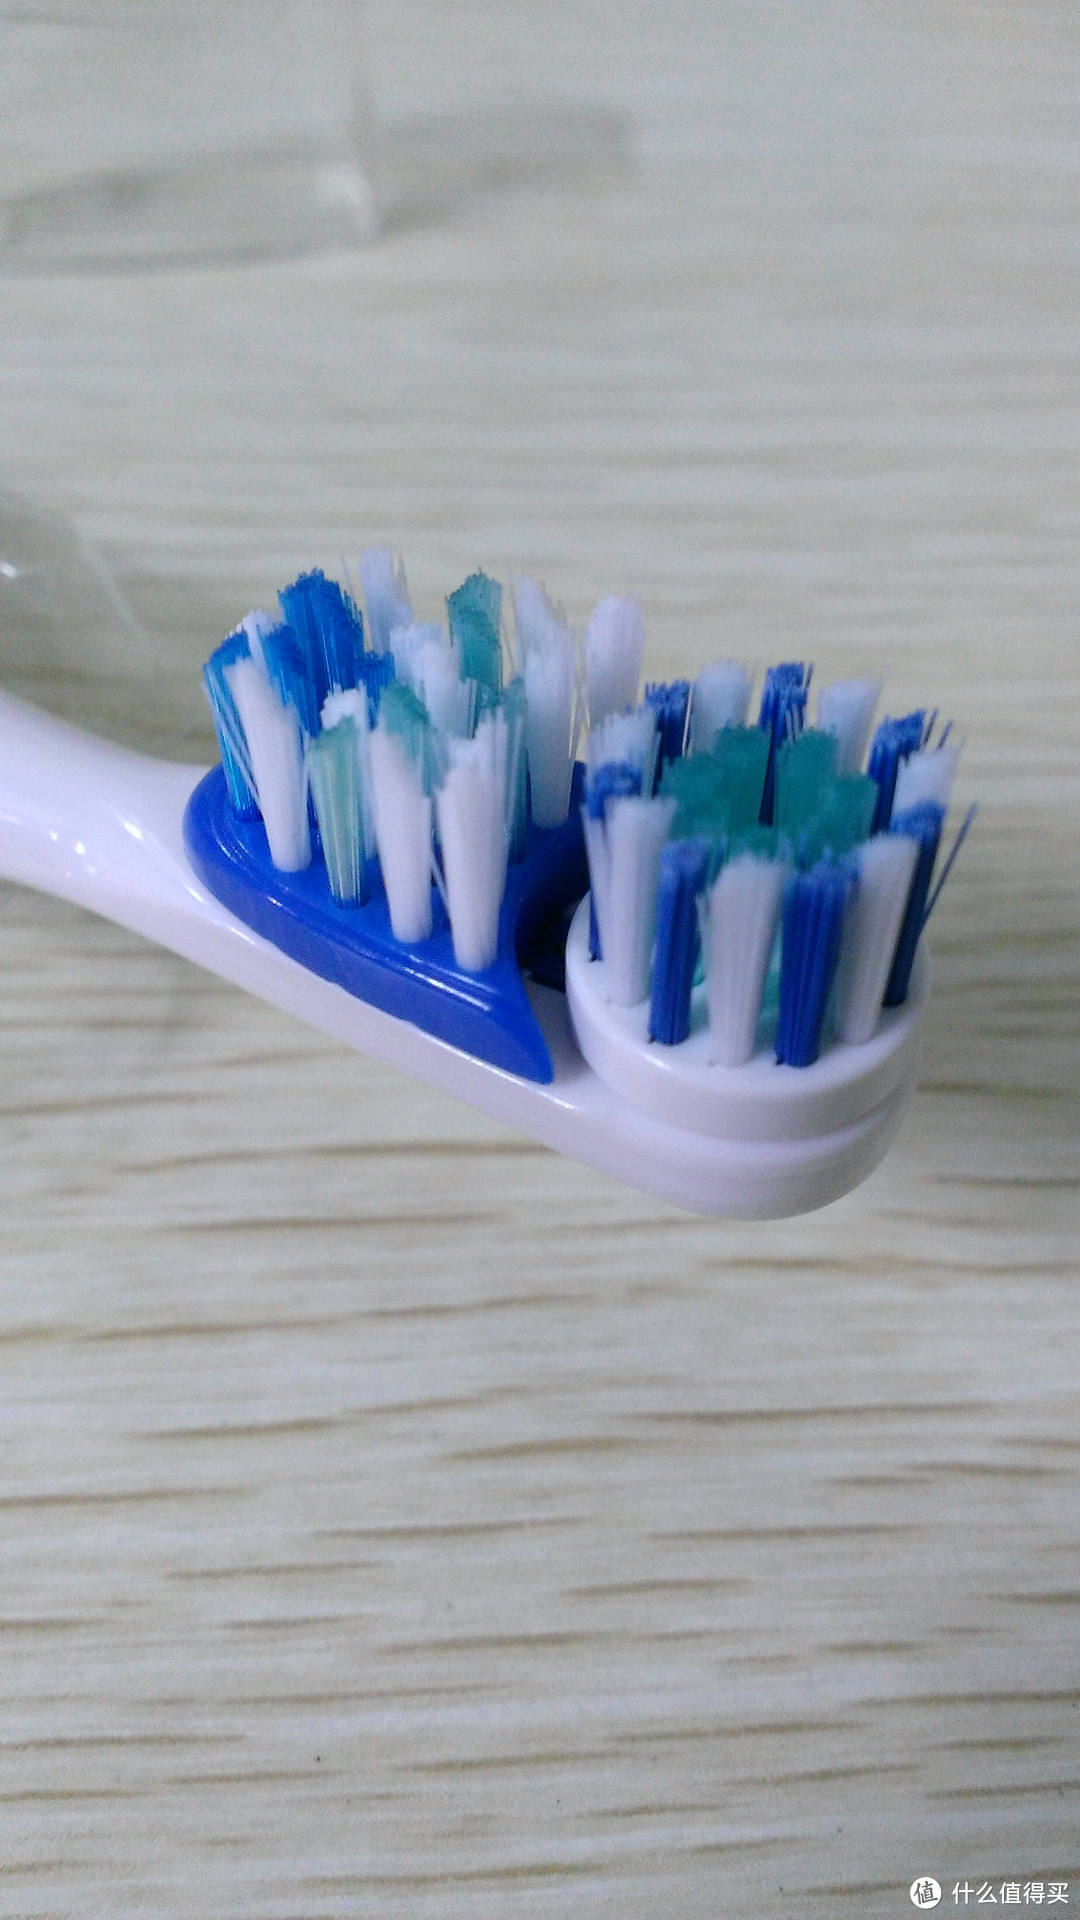 ARM & HAMMER 艾禾美 专业洁白型 牙膏&牙刷试用报告